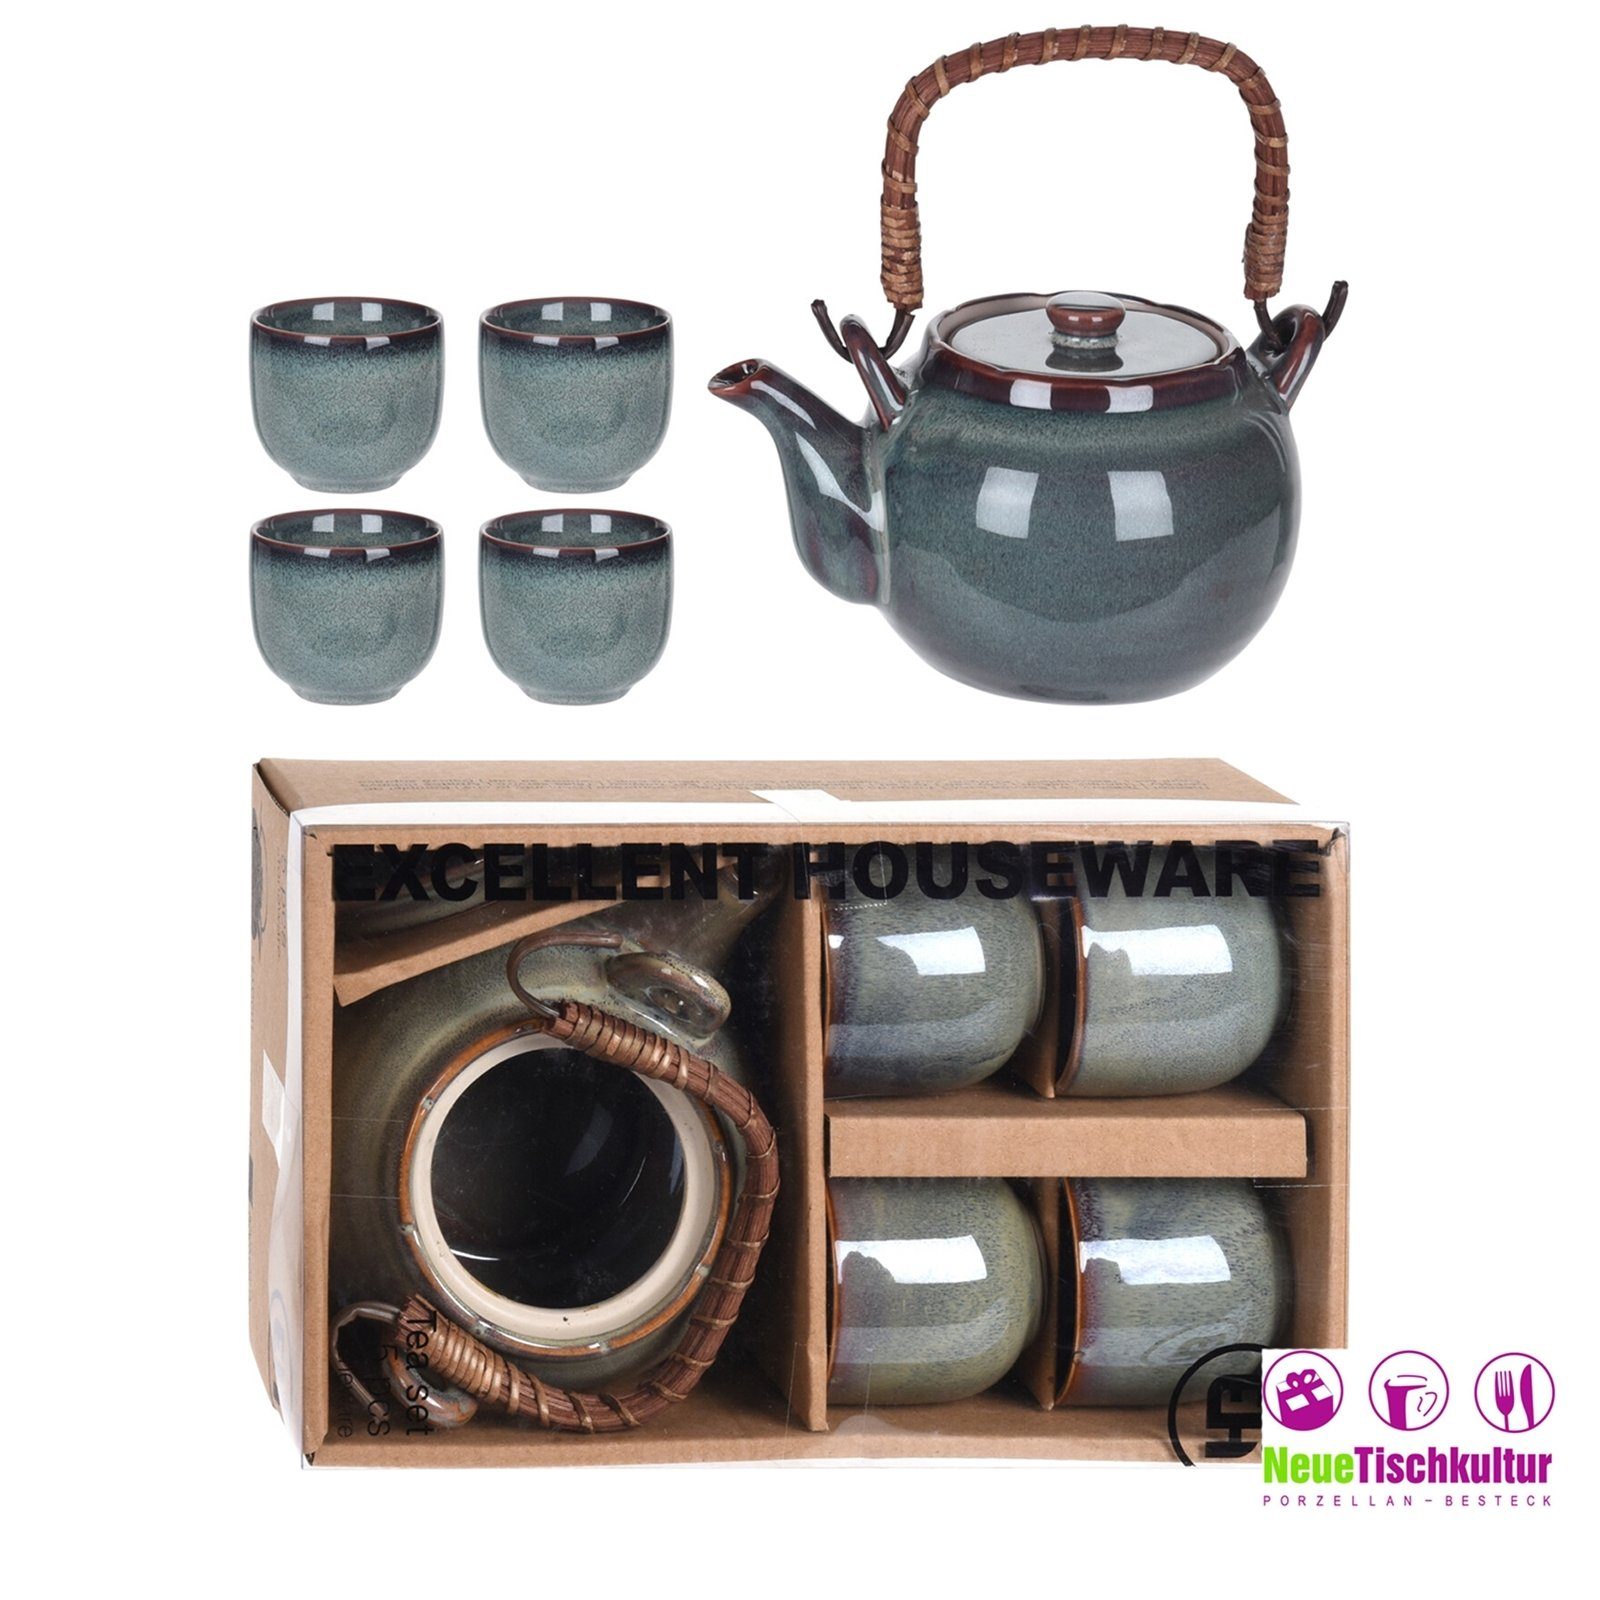 mit Neuetischkultur Keramik Teekanne 4 Becher Teekanne